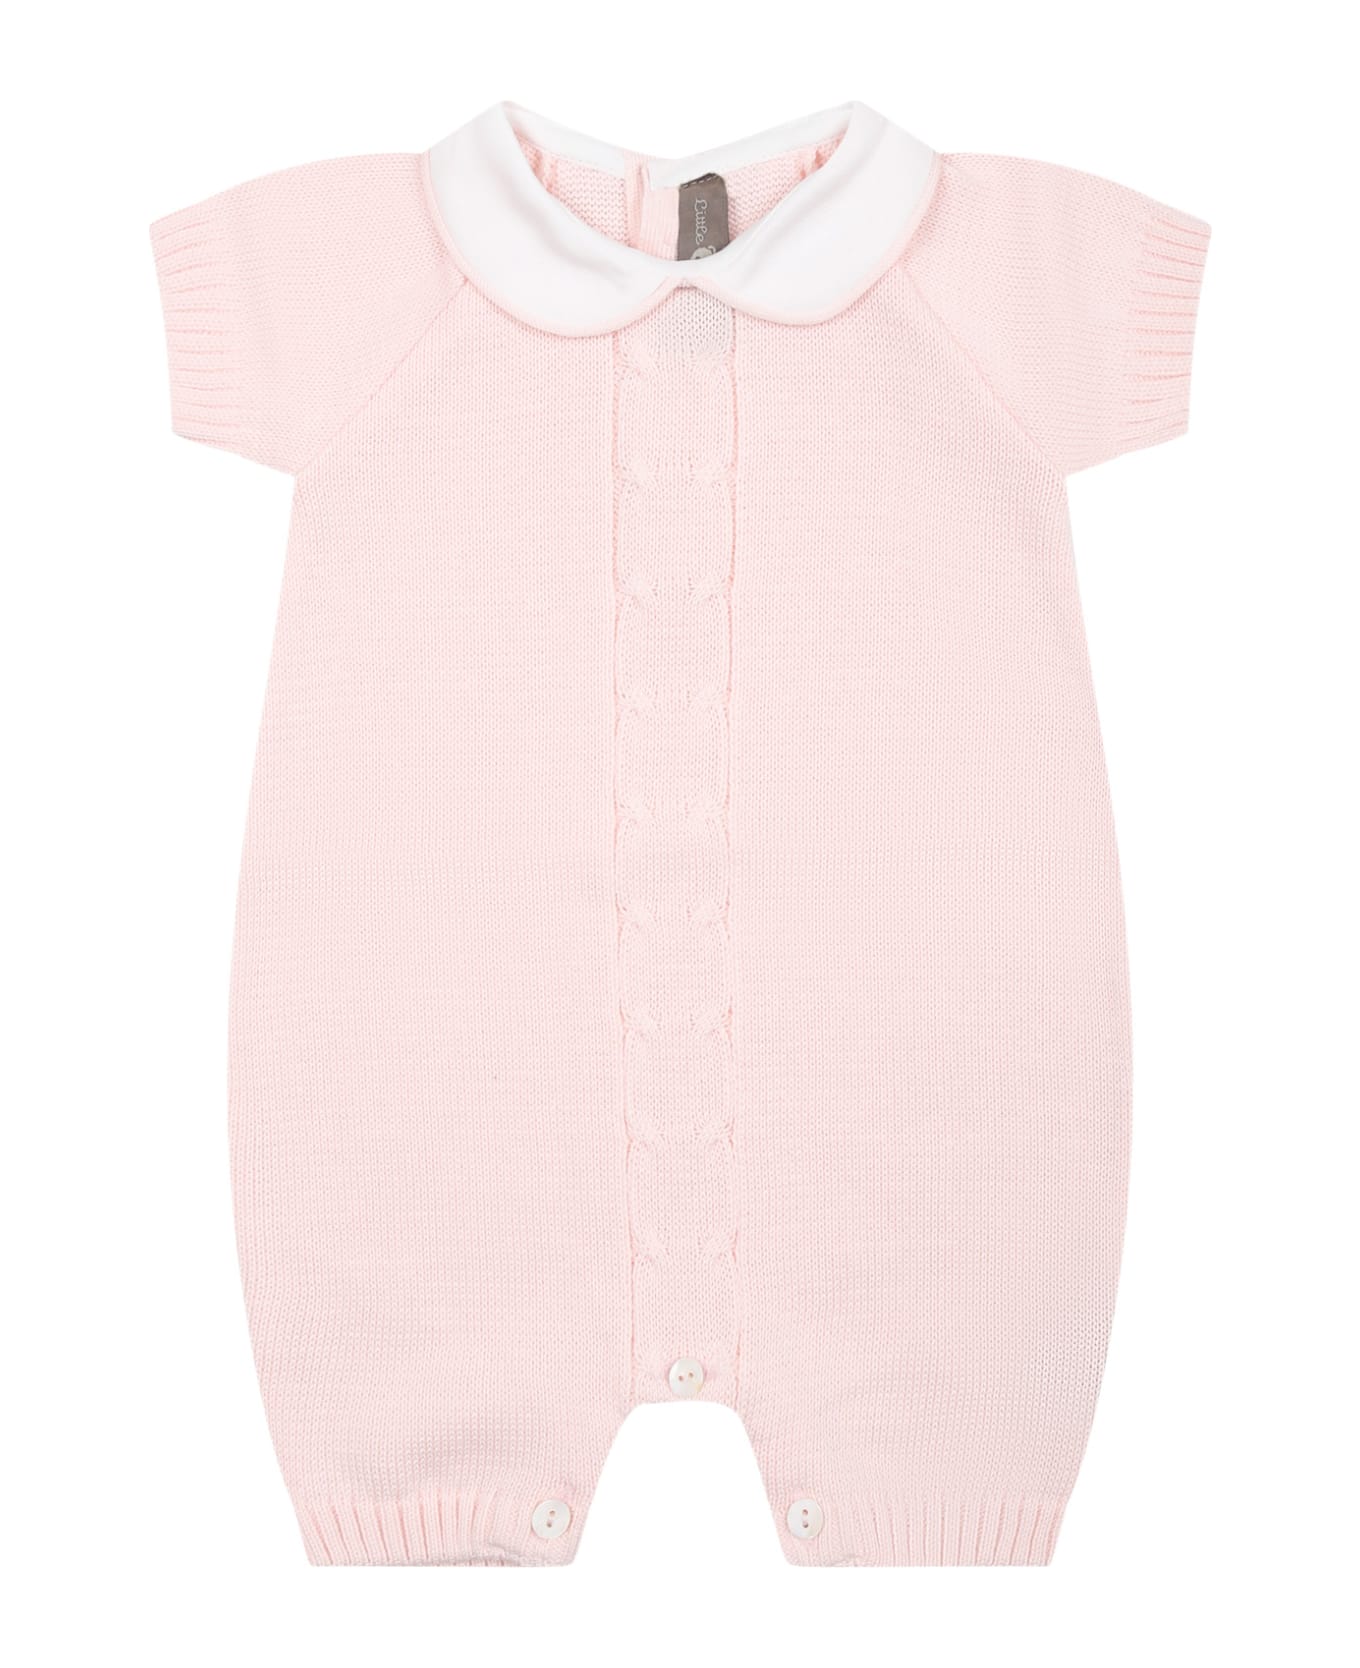 Little Bear Pink Romper For Baby Girl - Rosa